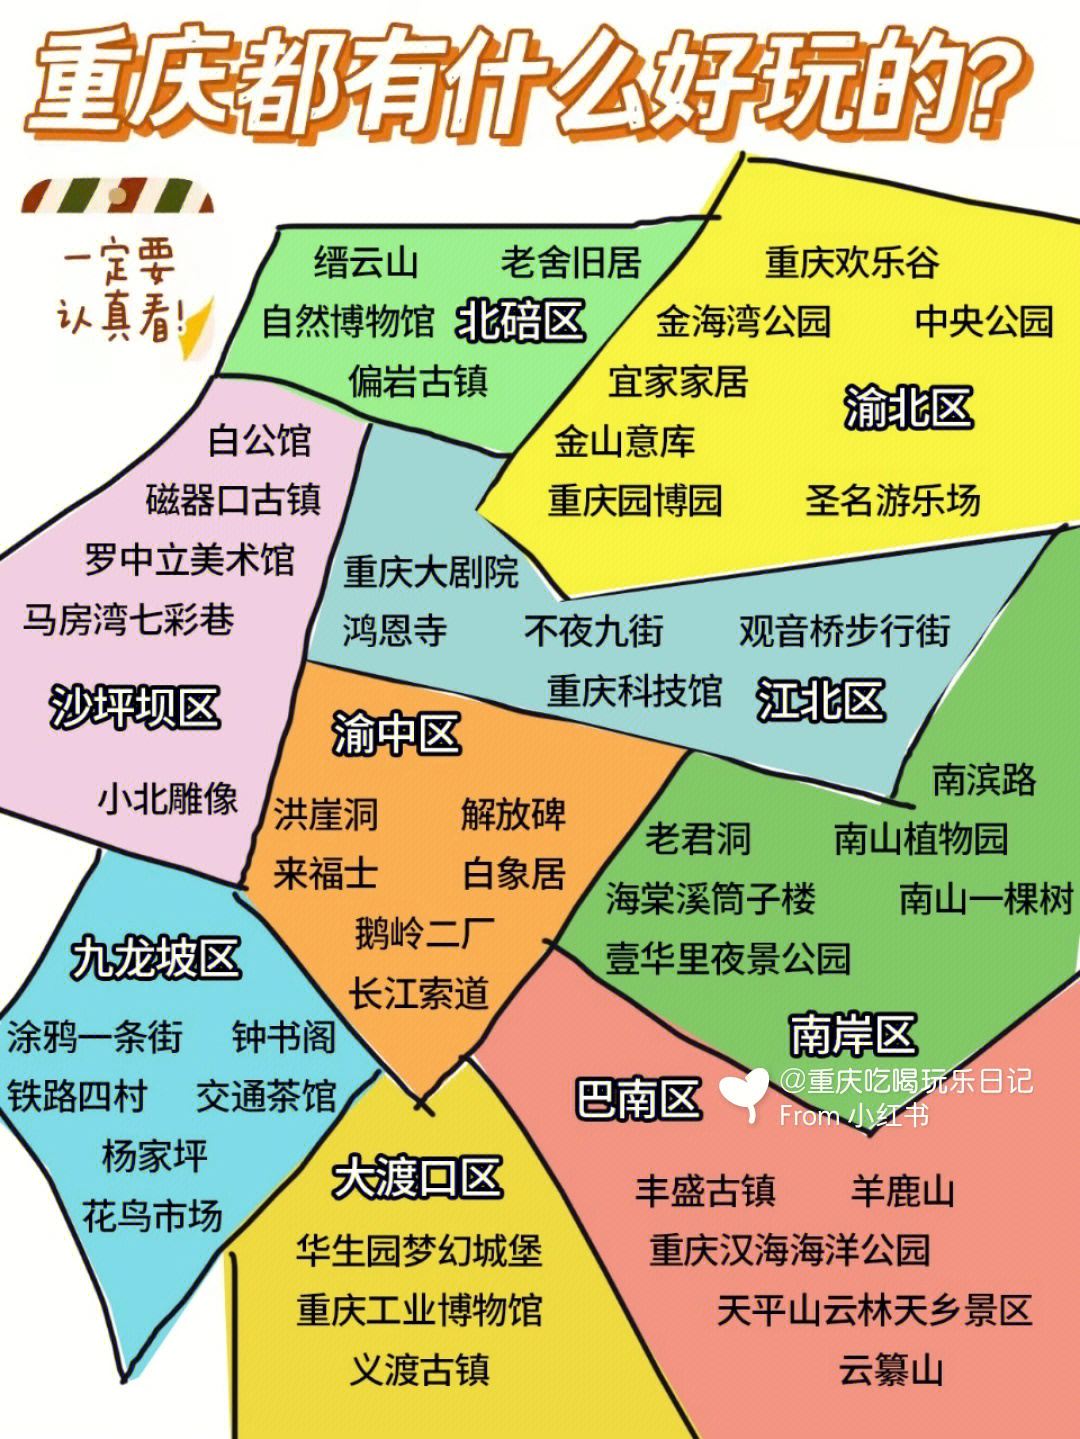 重庆市主城分区地图图片